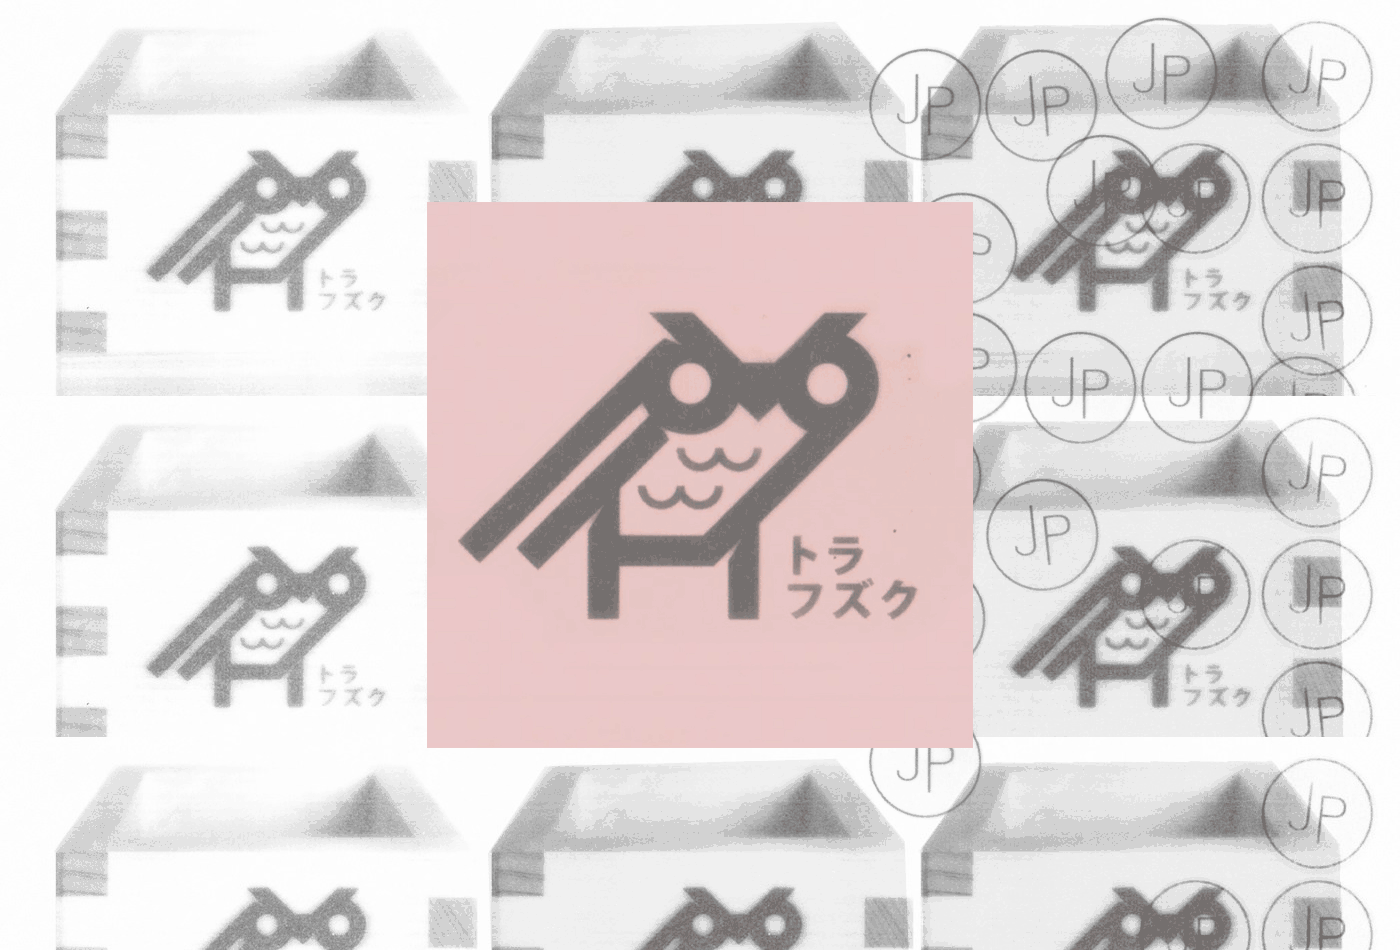 fukuro-masu-masucup-cup-sake-sakè-nihon-hinoki-japan-vacaliebres-branding-owl-logo-wooden-animation